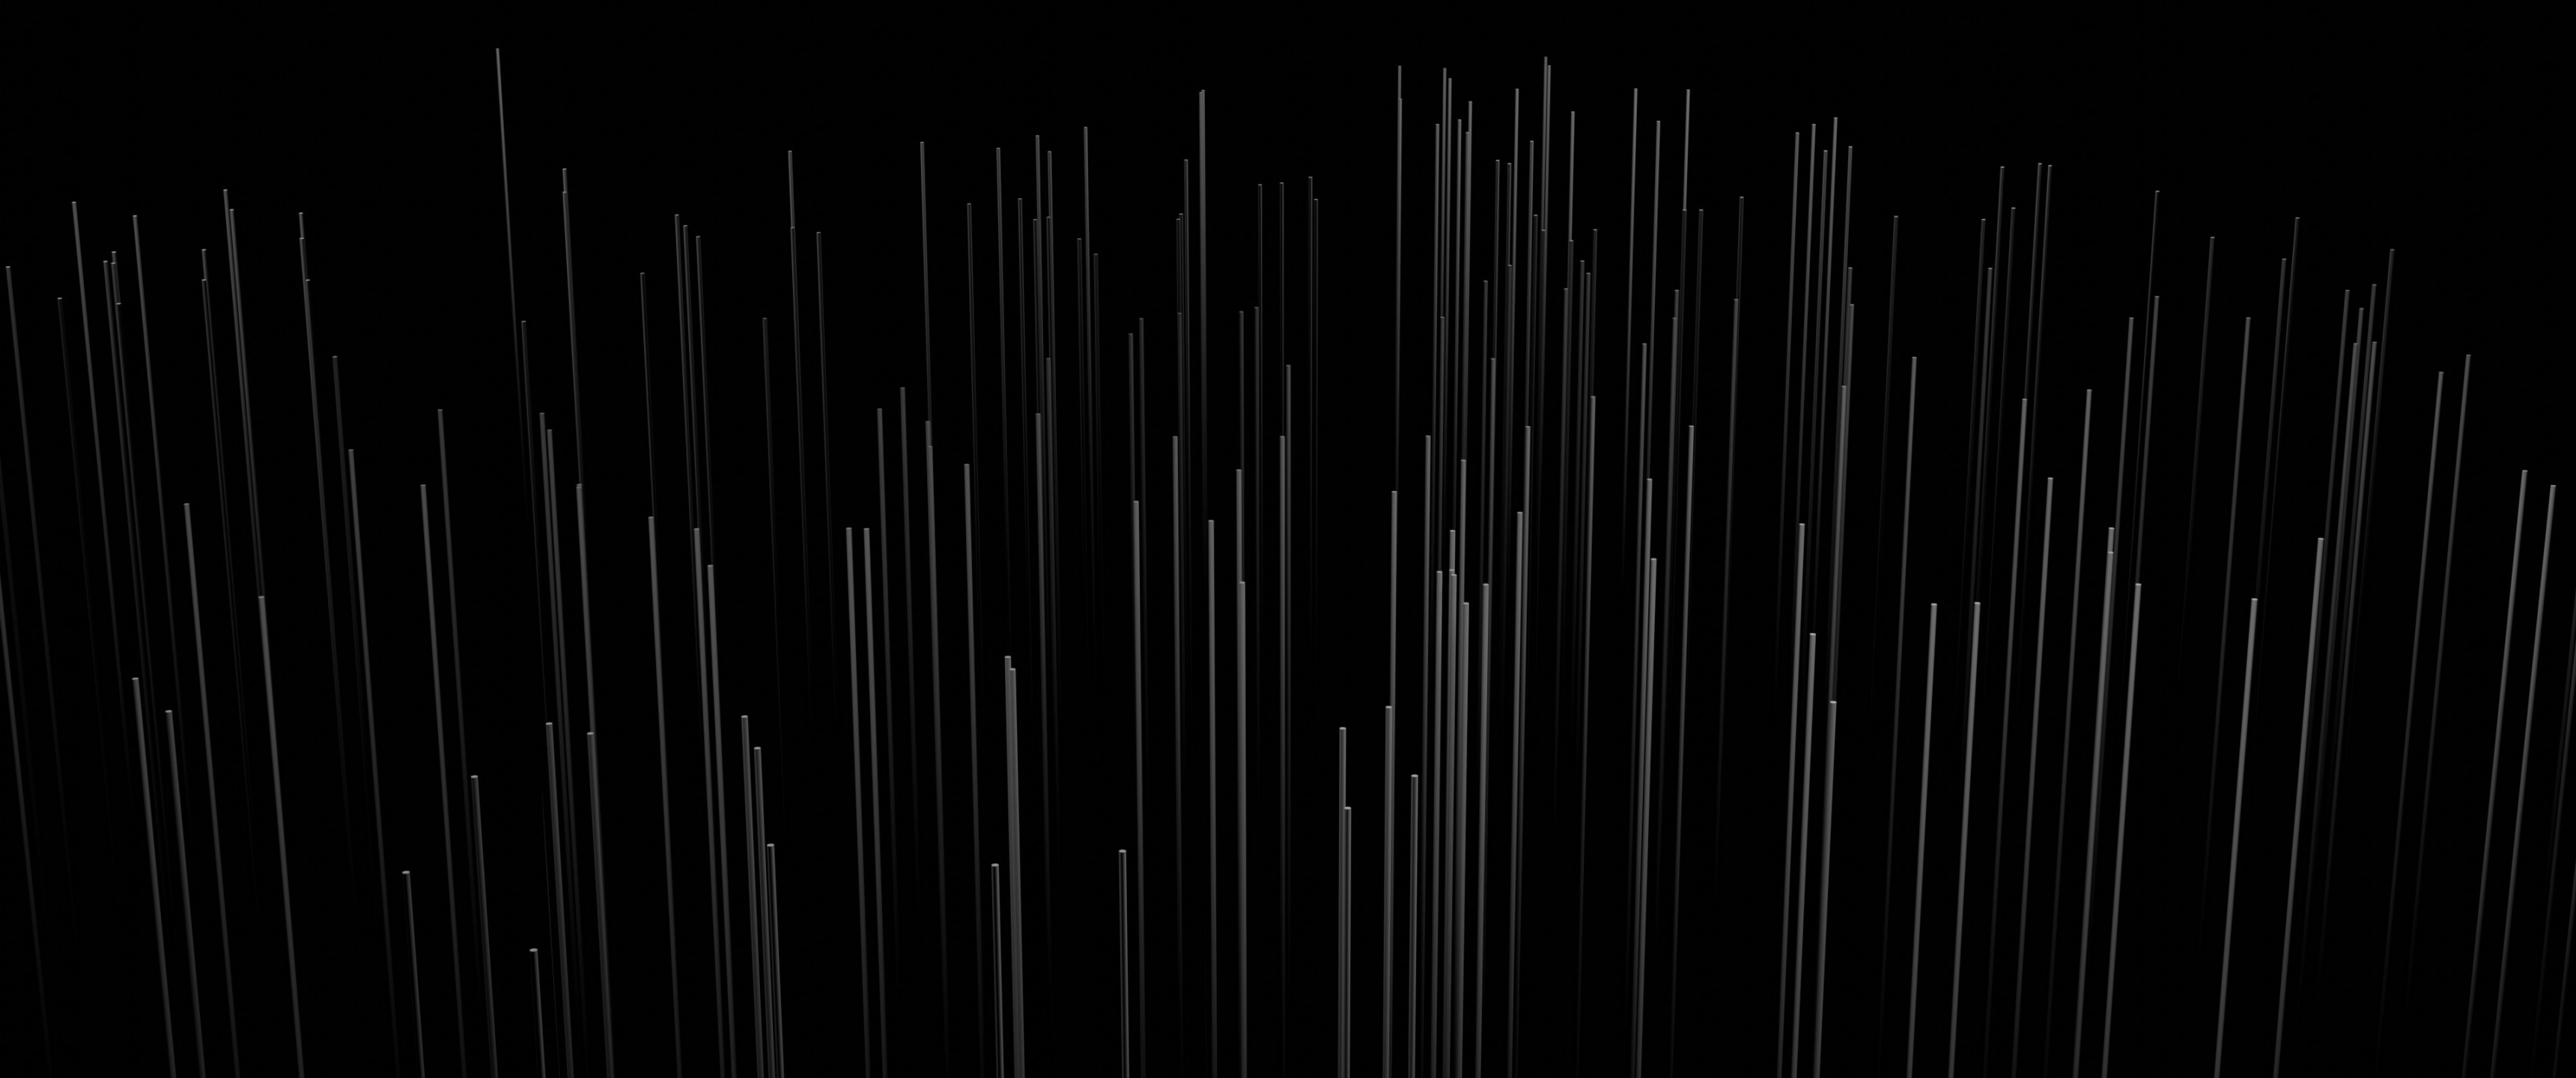 Digital Abstract Wallpaper 4K, 3D Render, Pattern, Black/Dark, #7124